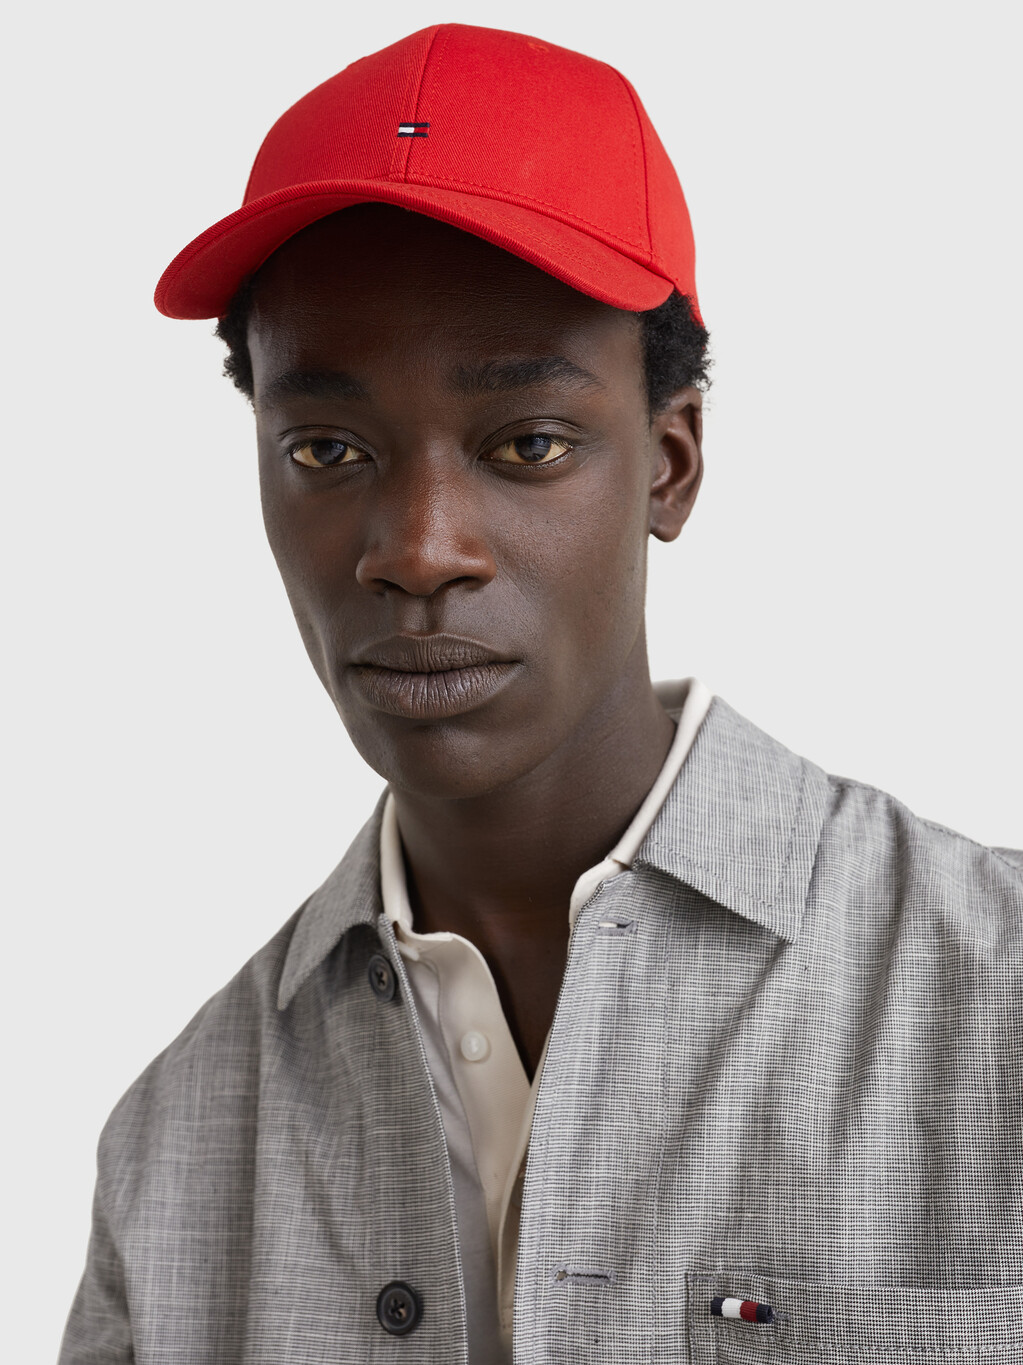 經典棒球帽, APPLE RED, hi-res